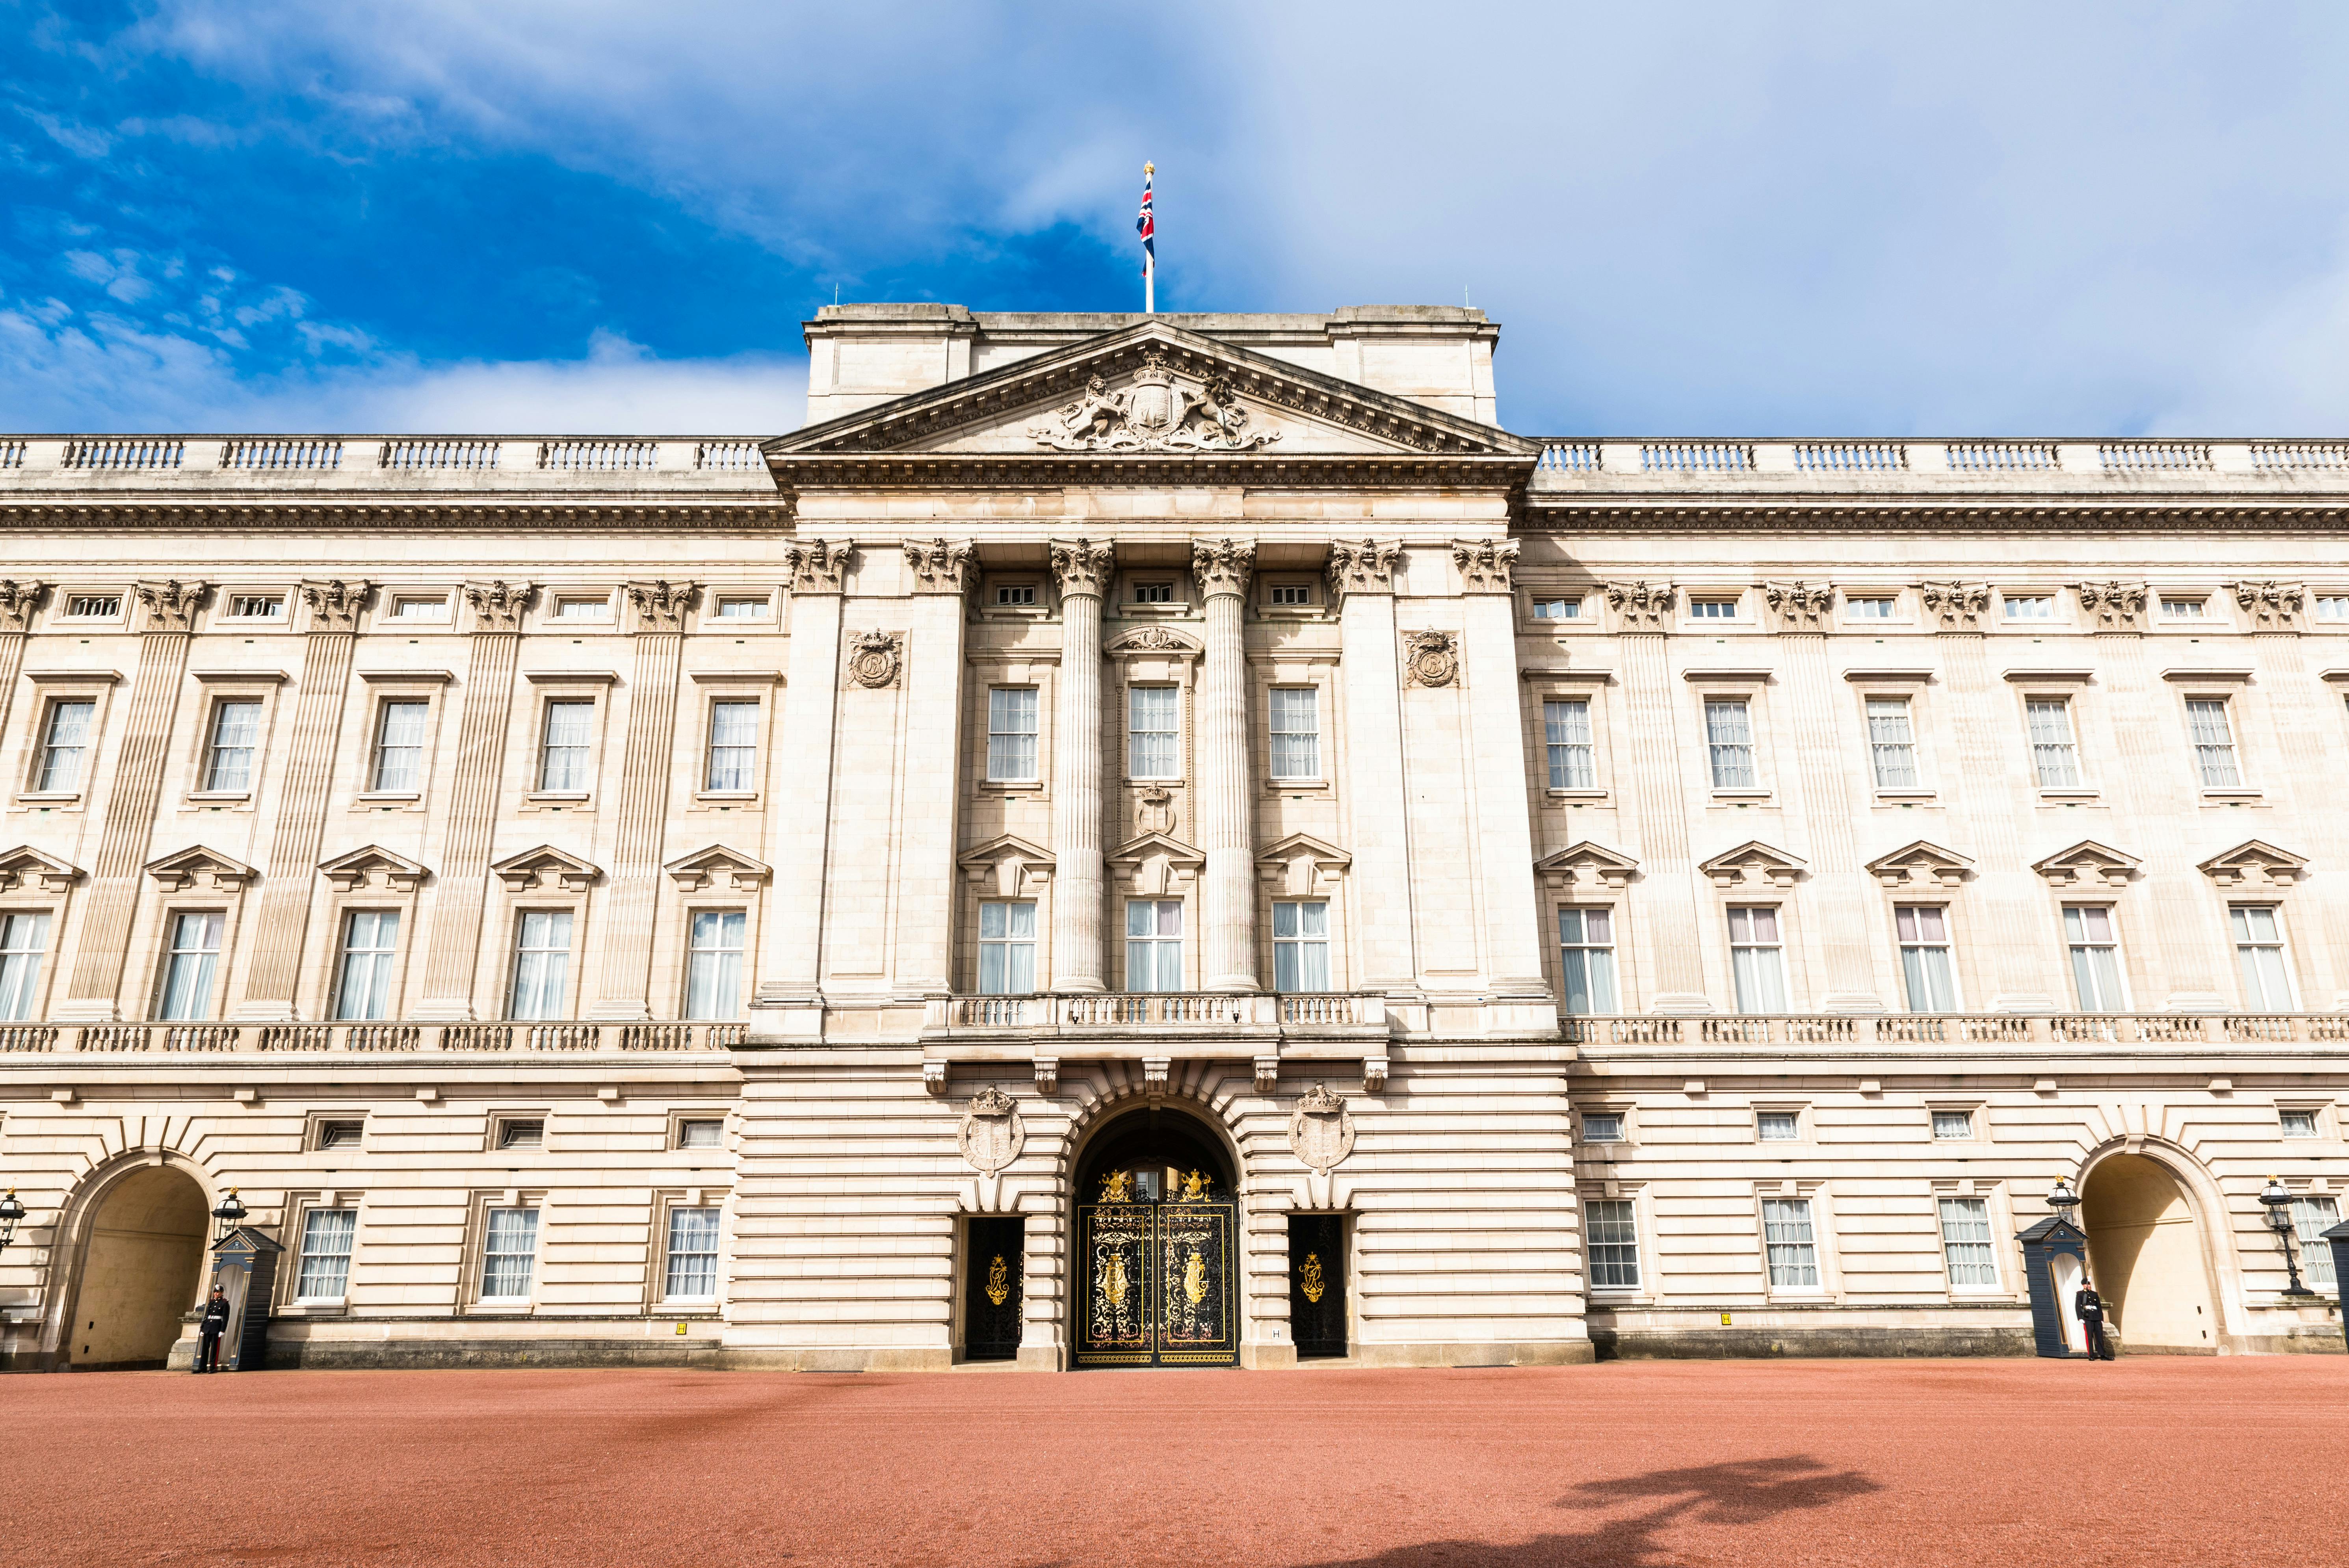 Billets pour le palais de Buckingham et visite à pied royale